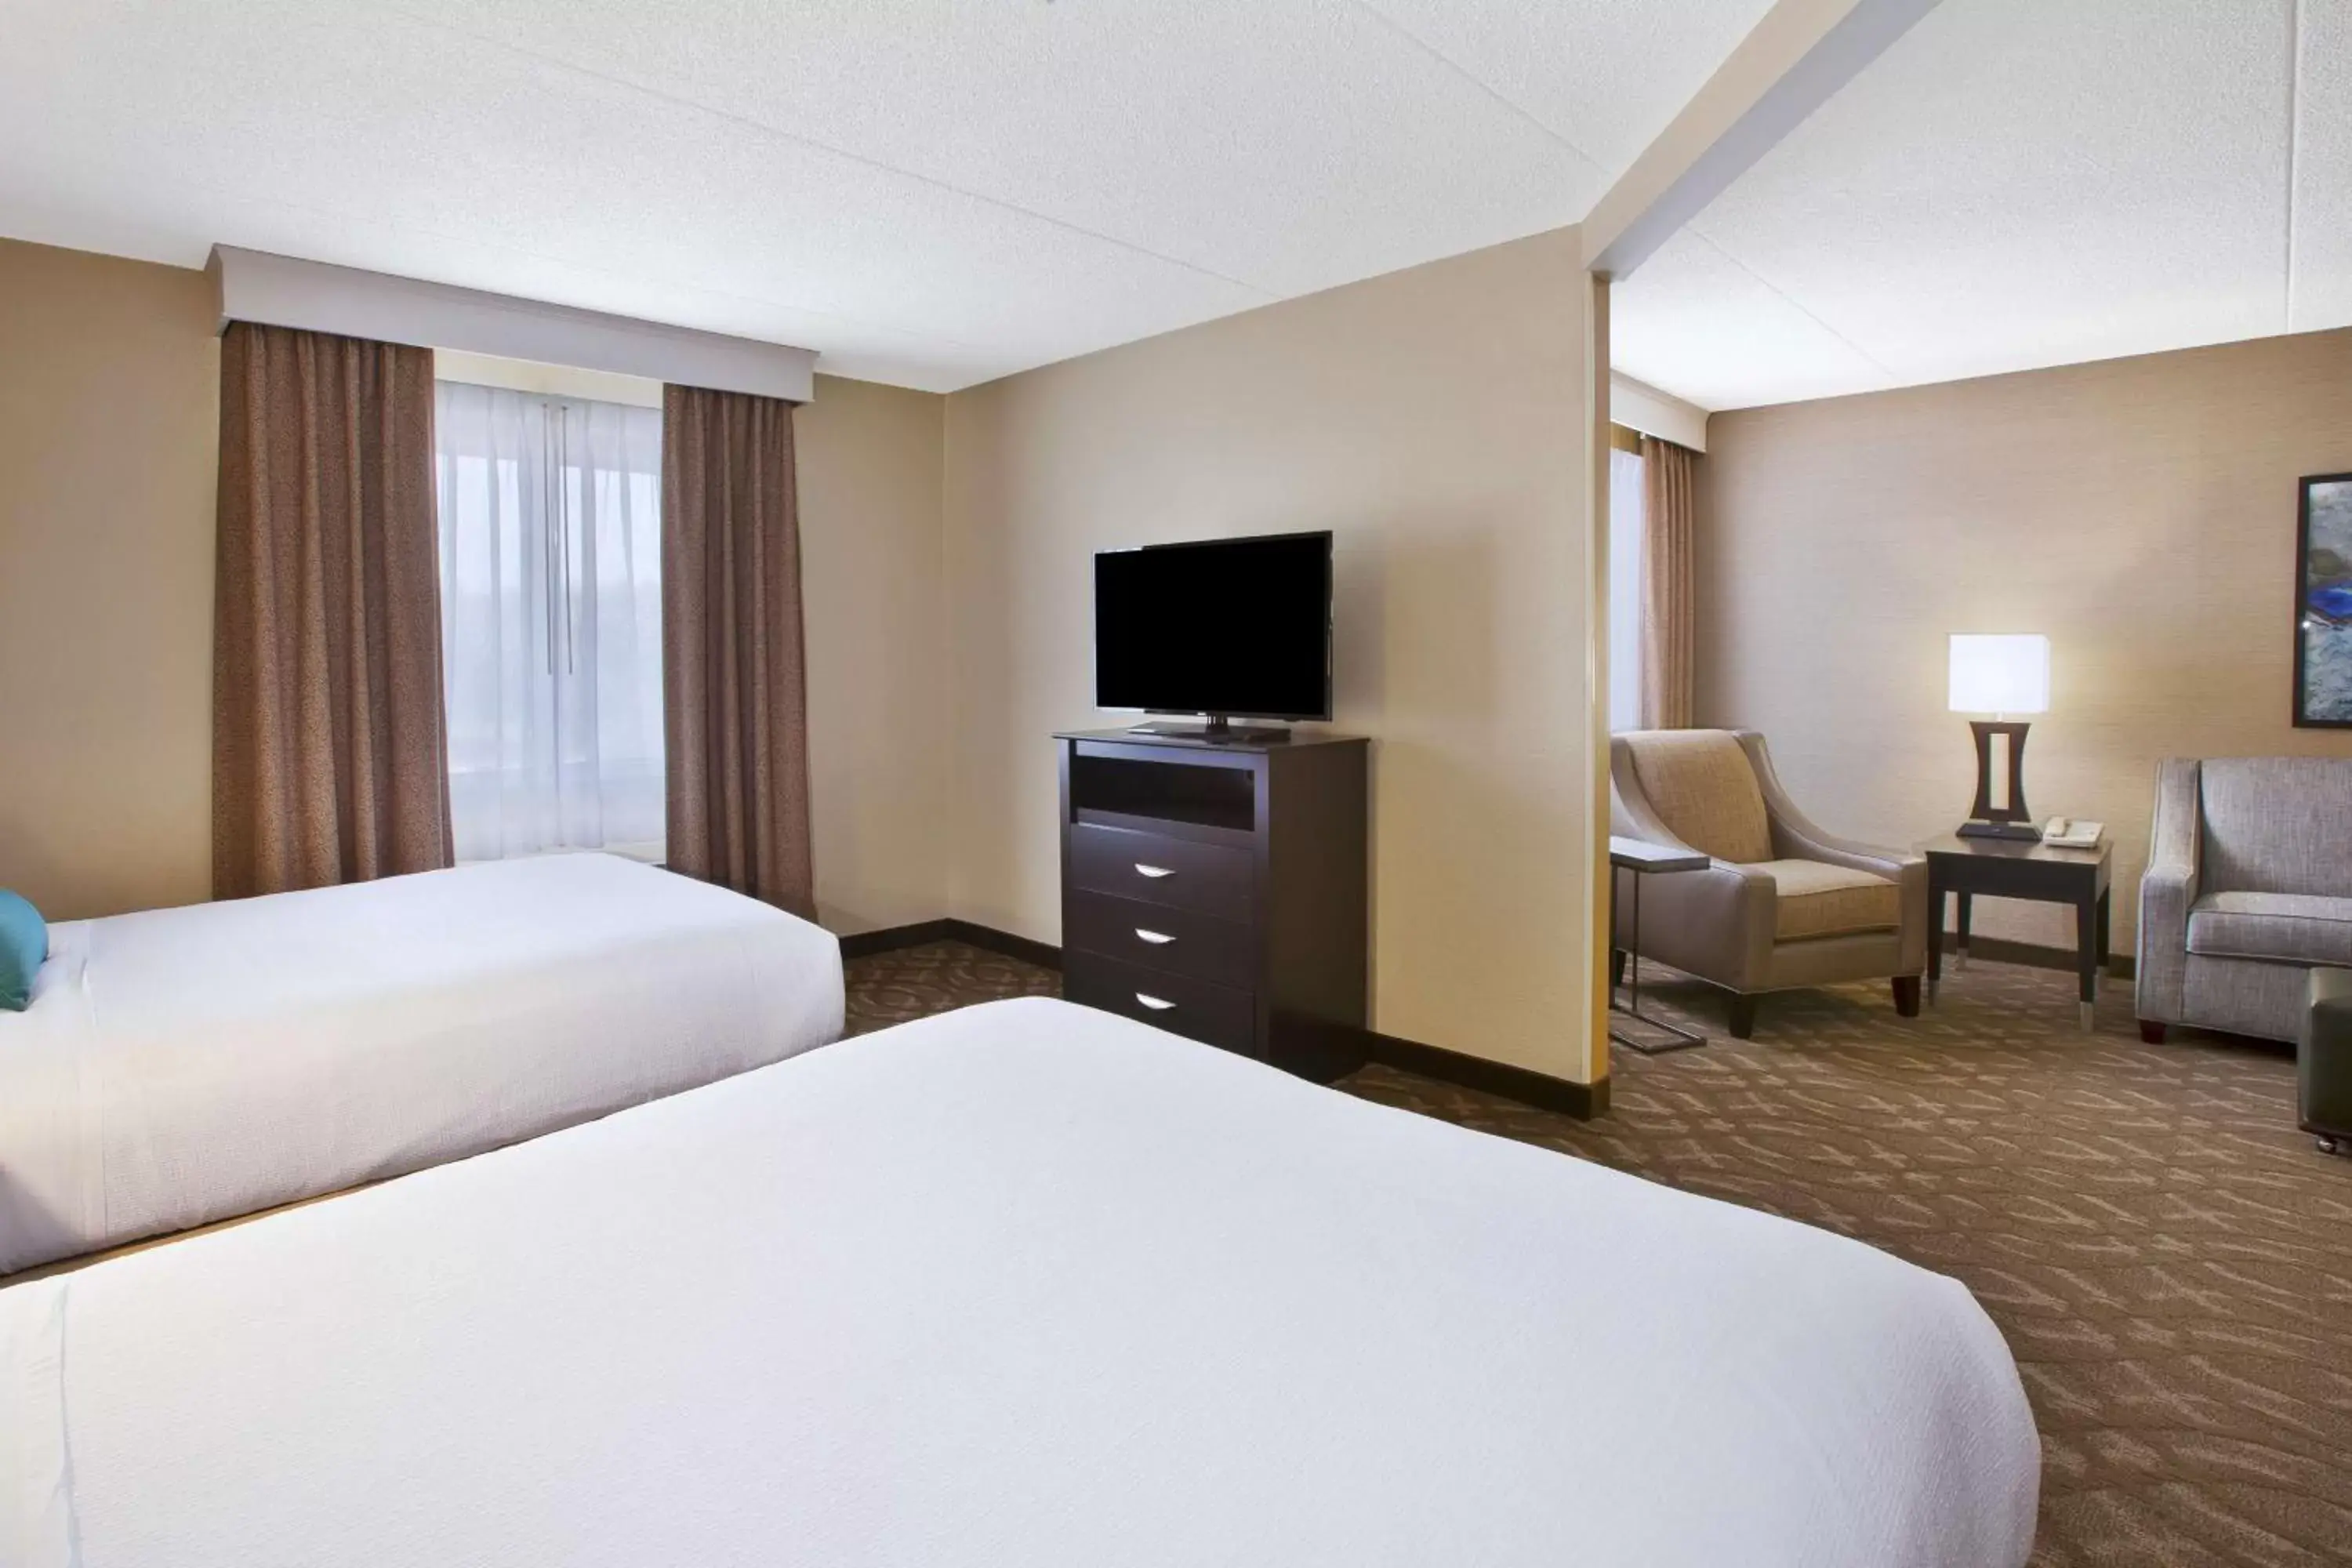 Bedroom, Bed in Best Western Okemos/East Lansing Hotel & Suites